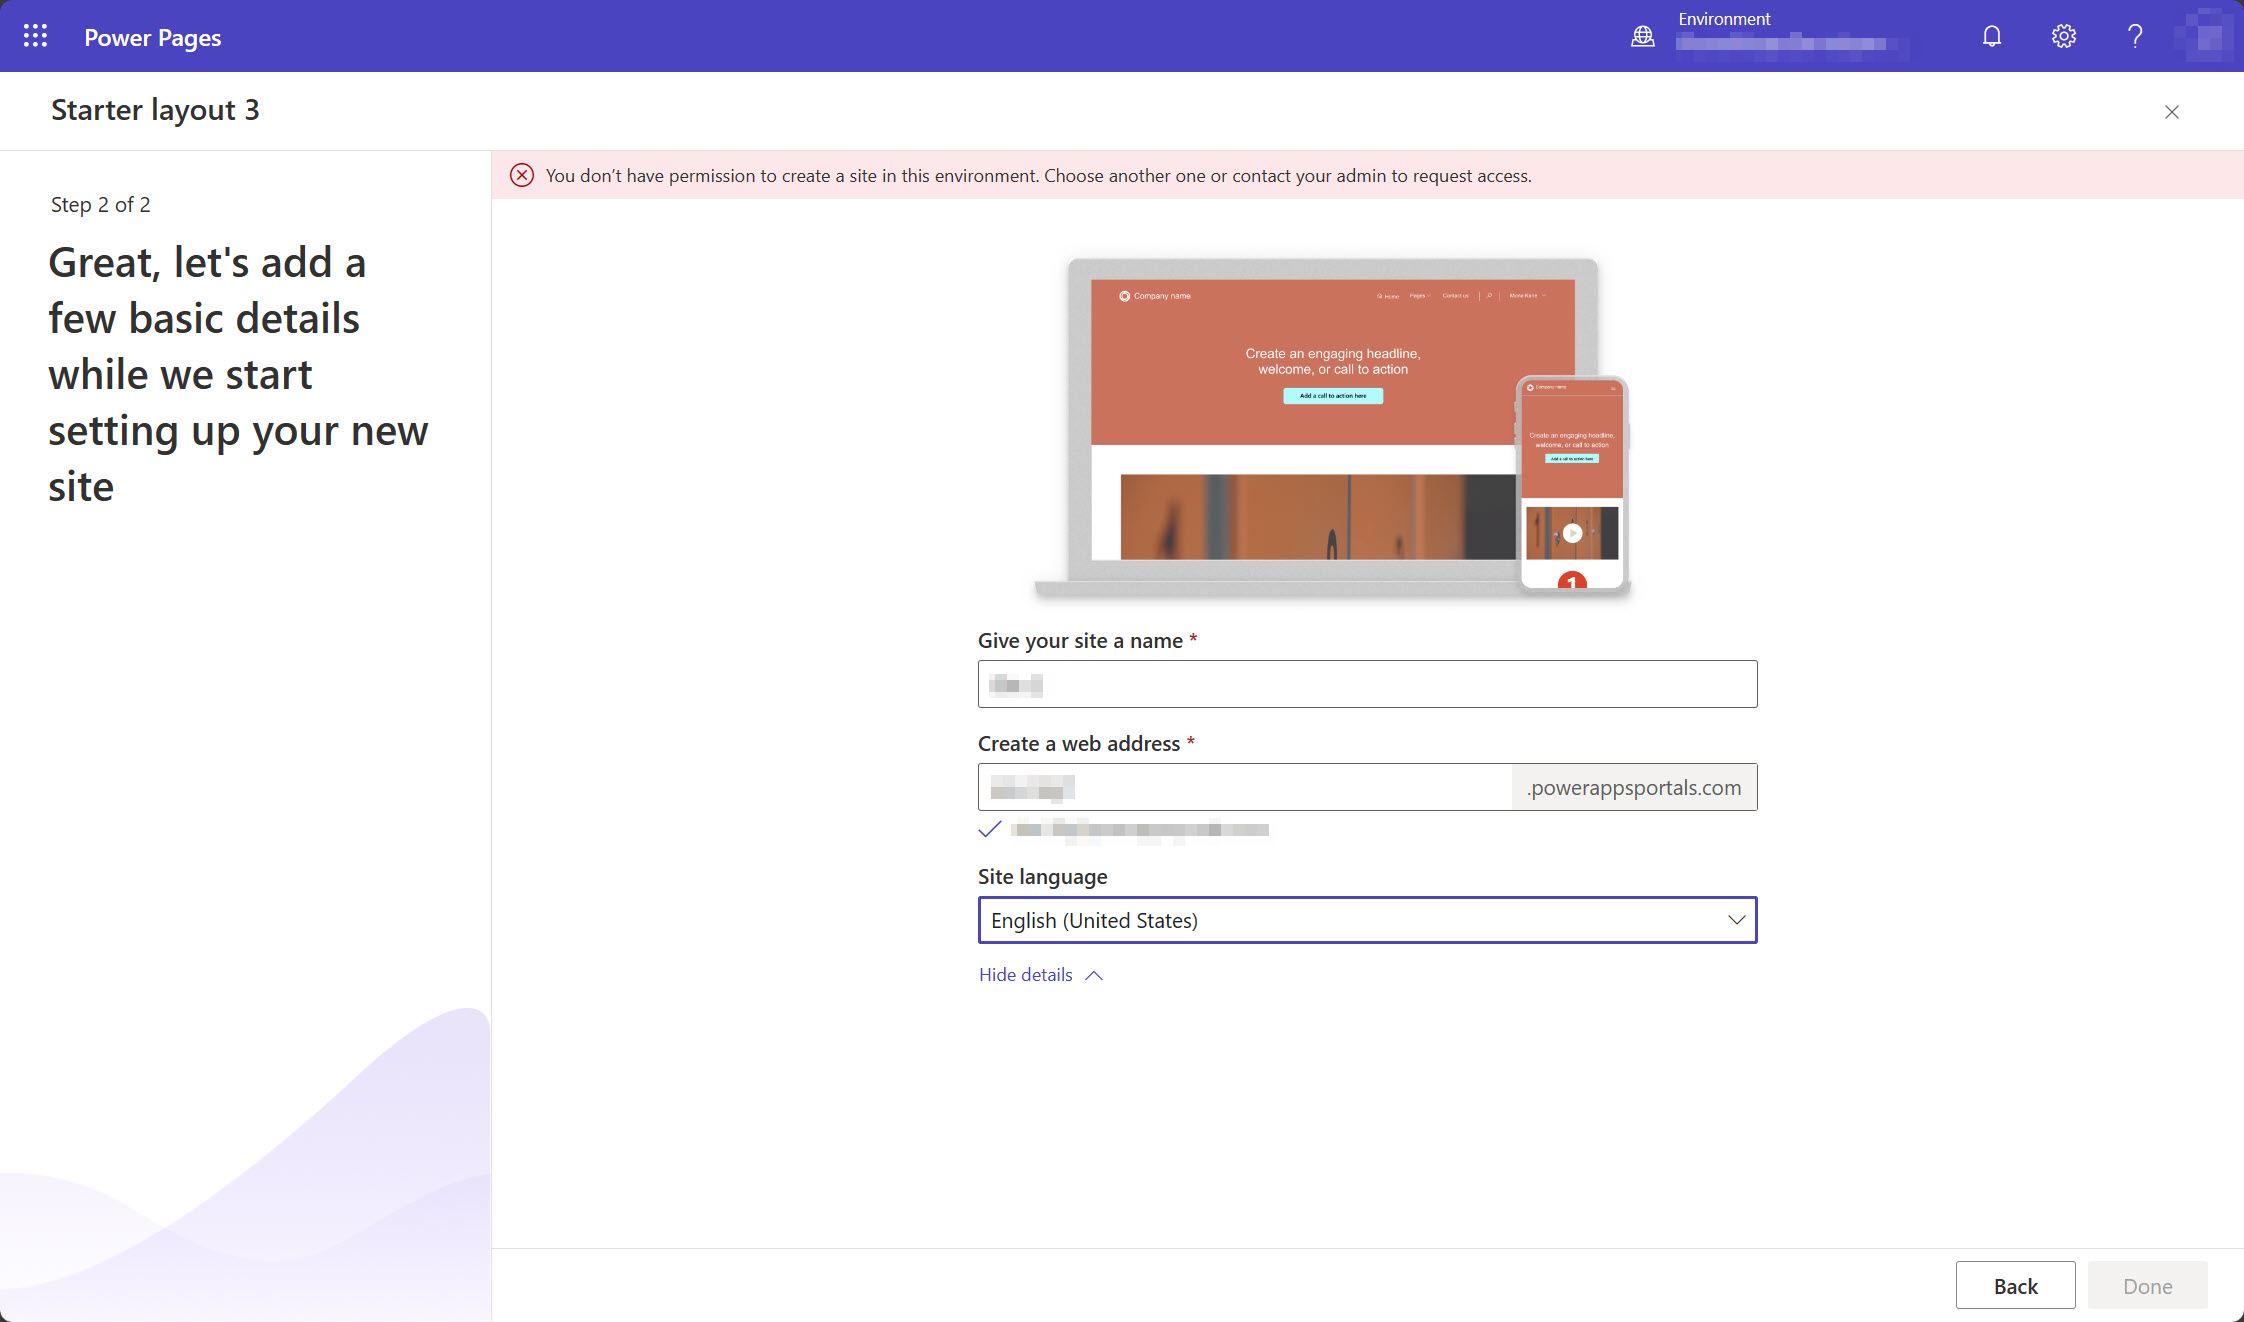 Captura de tela do estúdio de design do Power Pages exibindo uma mensagem indicando que o usuário não tem permissão para criar um site no ambiente selecionado.